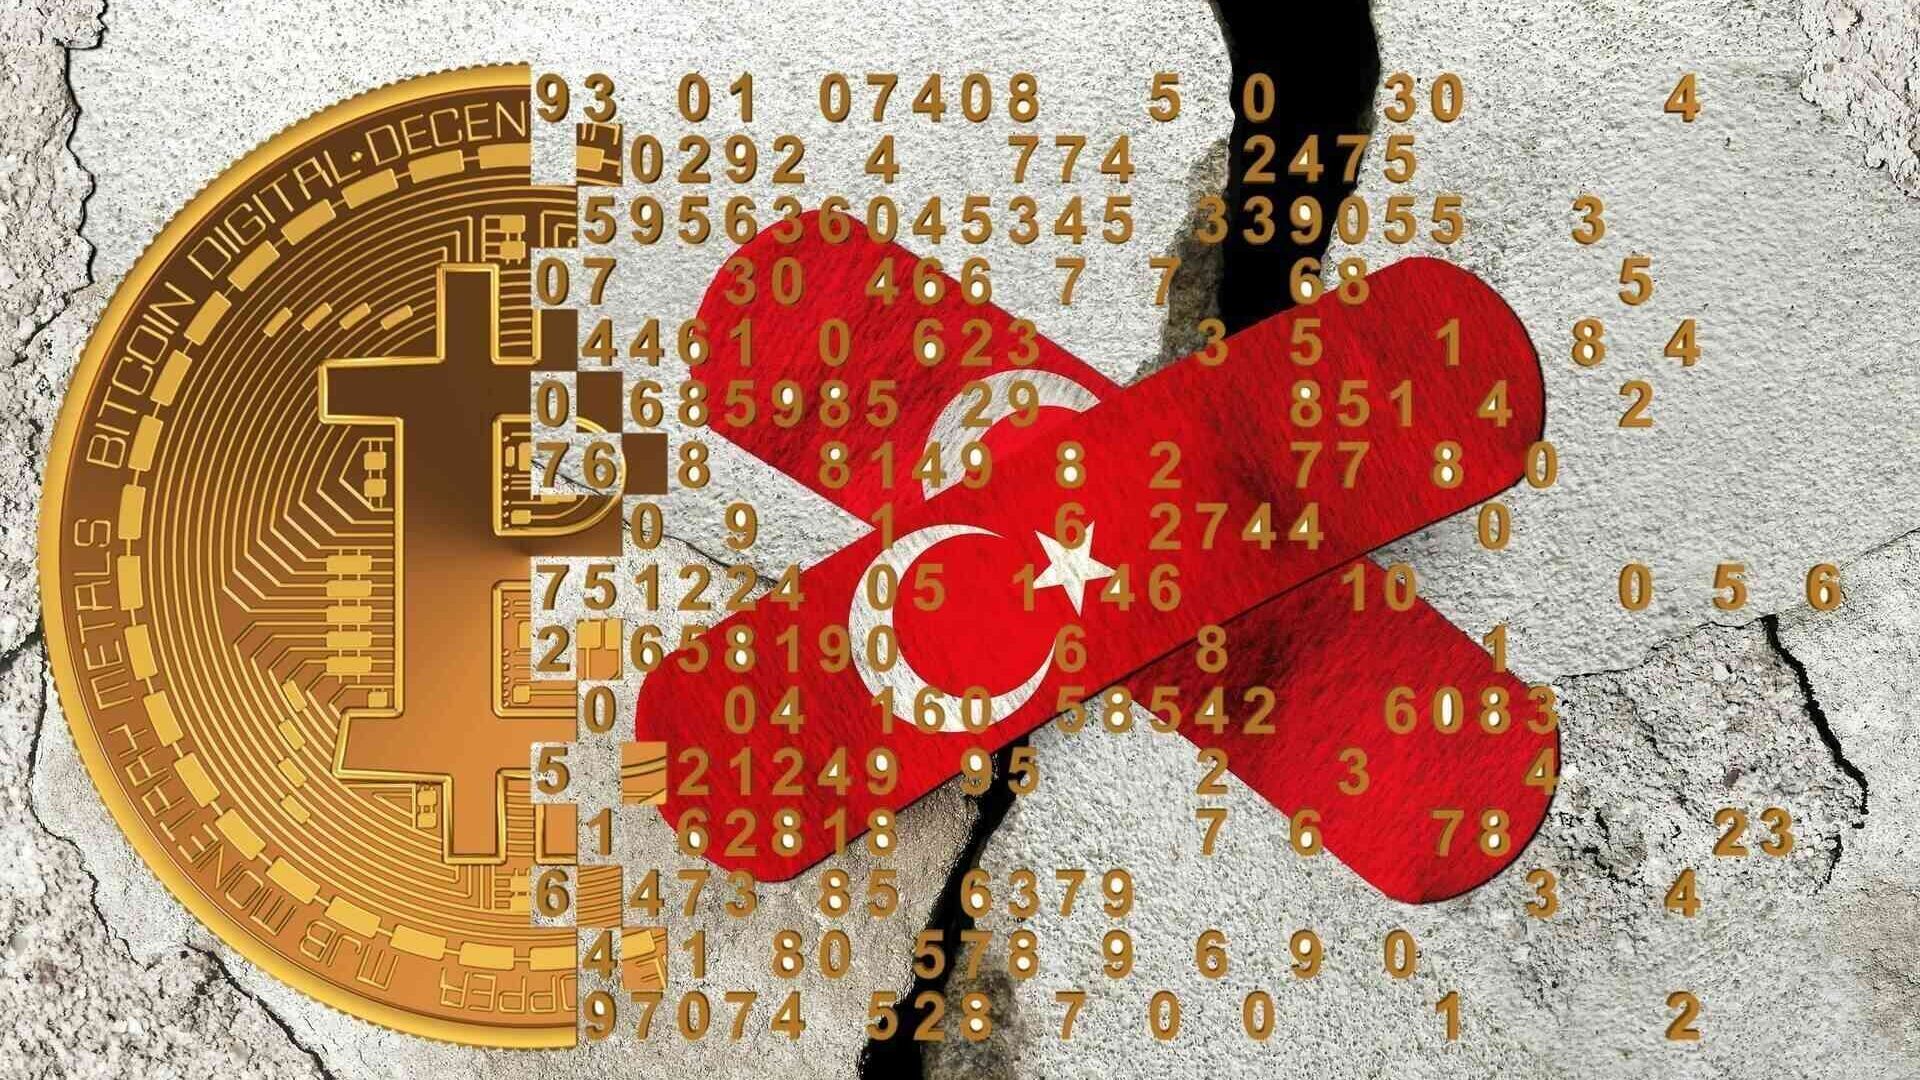 Cryptocurrencies: ຫຼັງຈາກແຜ່ນດິນໄຫວຮຸນແຮງທີ່ເກີດຂຶ້ນໃນພາກໃຕ້ຂອງ Anatolia ລະຫວ່າງວັນທີ 5 ແລະ 6 ເດືອນກຸມພາ 2023, ອຸດສາຫະກໍາ cryptocurrency ແລະ Blockchain ທົ່ວໂລກຍັງໃຫ້ຄໍາຫມັ້ນສັນຍາທີ່ຈະຊ່ວຍເຫຼືອຜູ້ເຄາະຮ້າຍດ້ວຍການບໍລິຈາກຂະຫນາດໃຫຍ່.